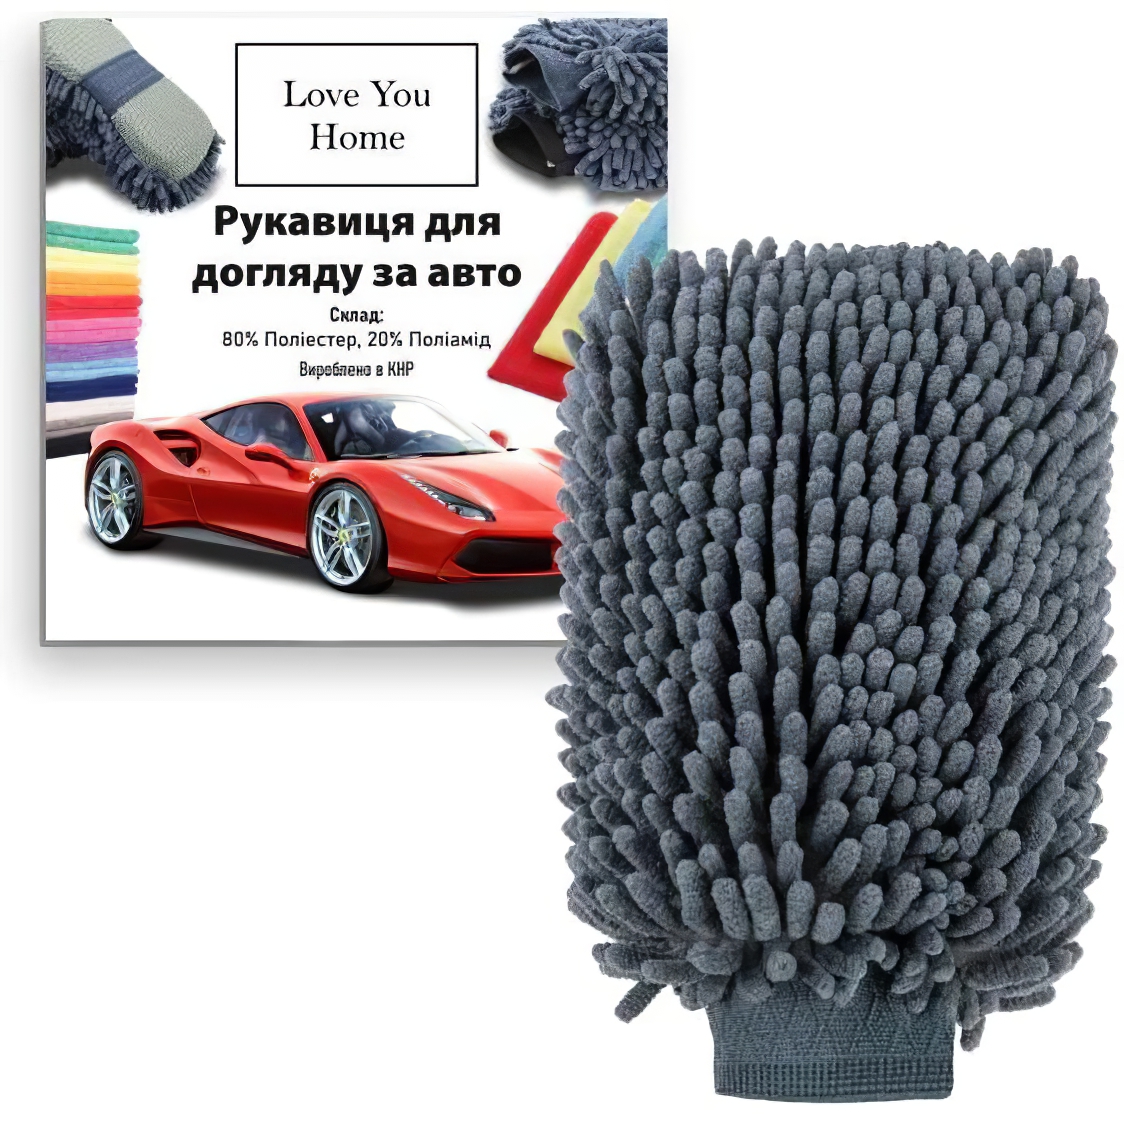 Перчатка для мойки авто LoveYouHome утолщенная микрофибра 25х18 см (LYH9015) - фото 2